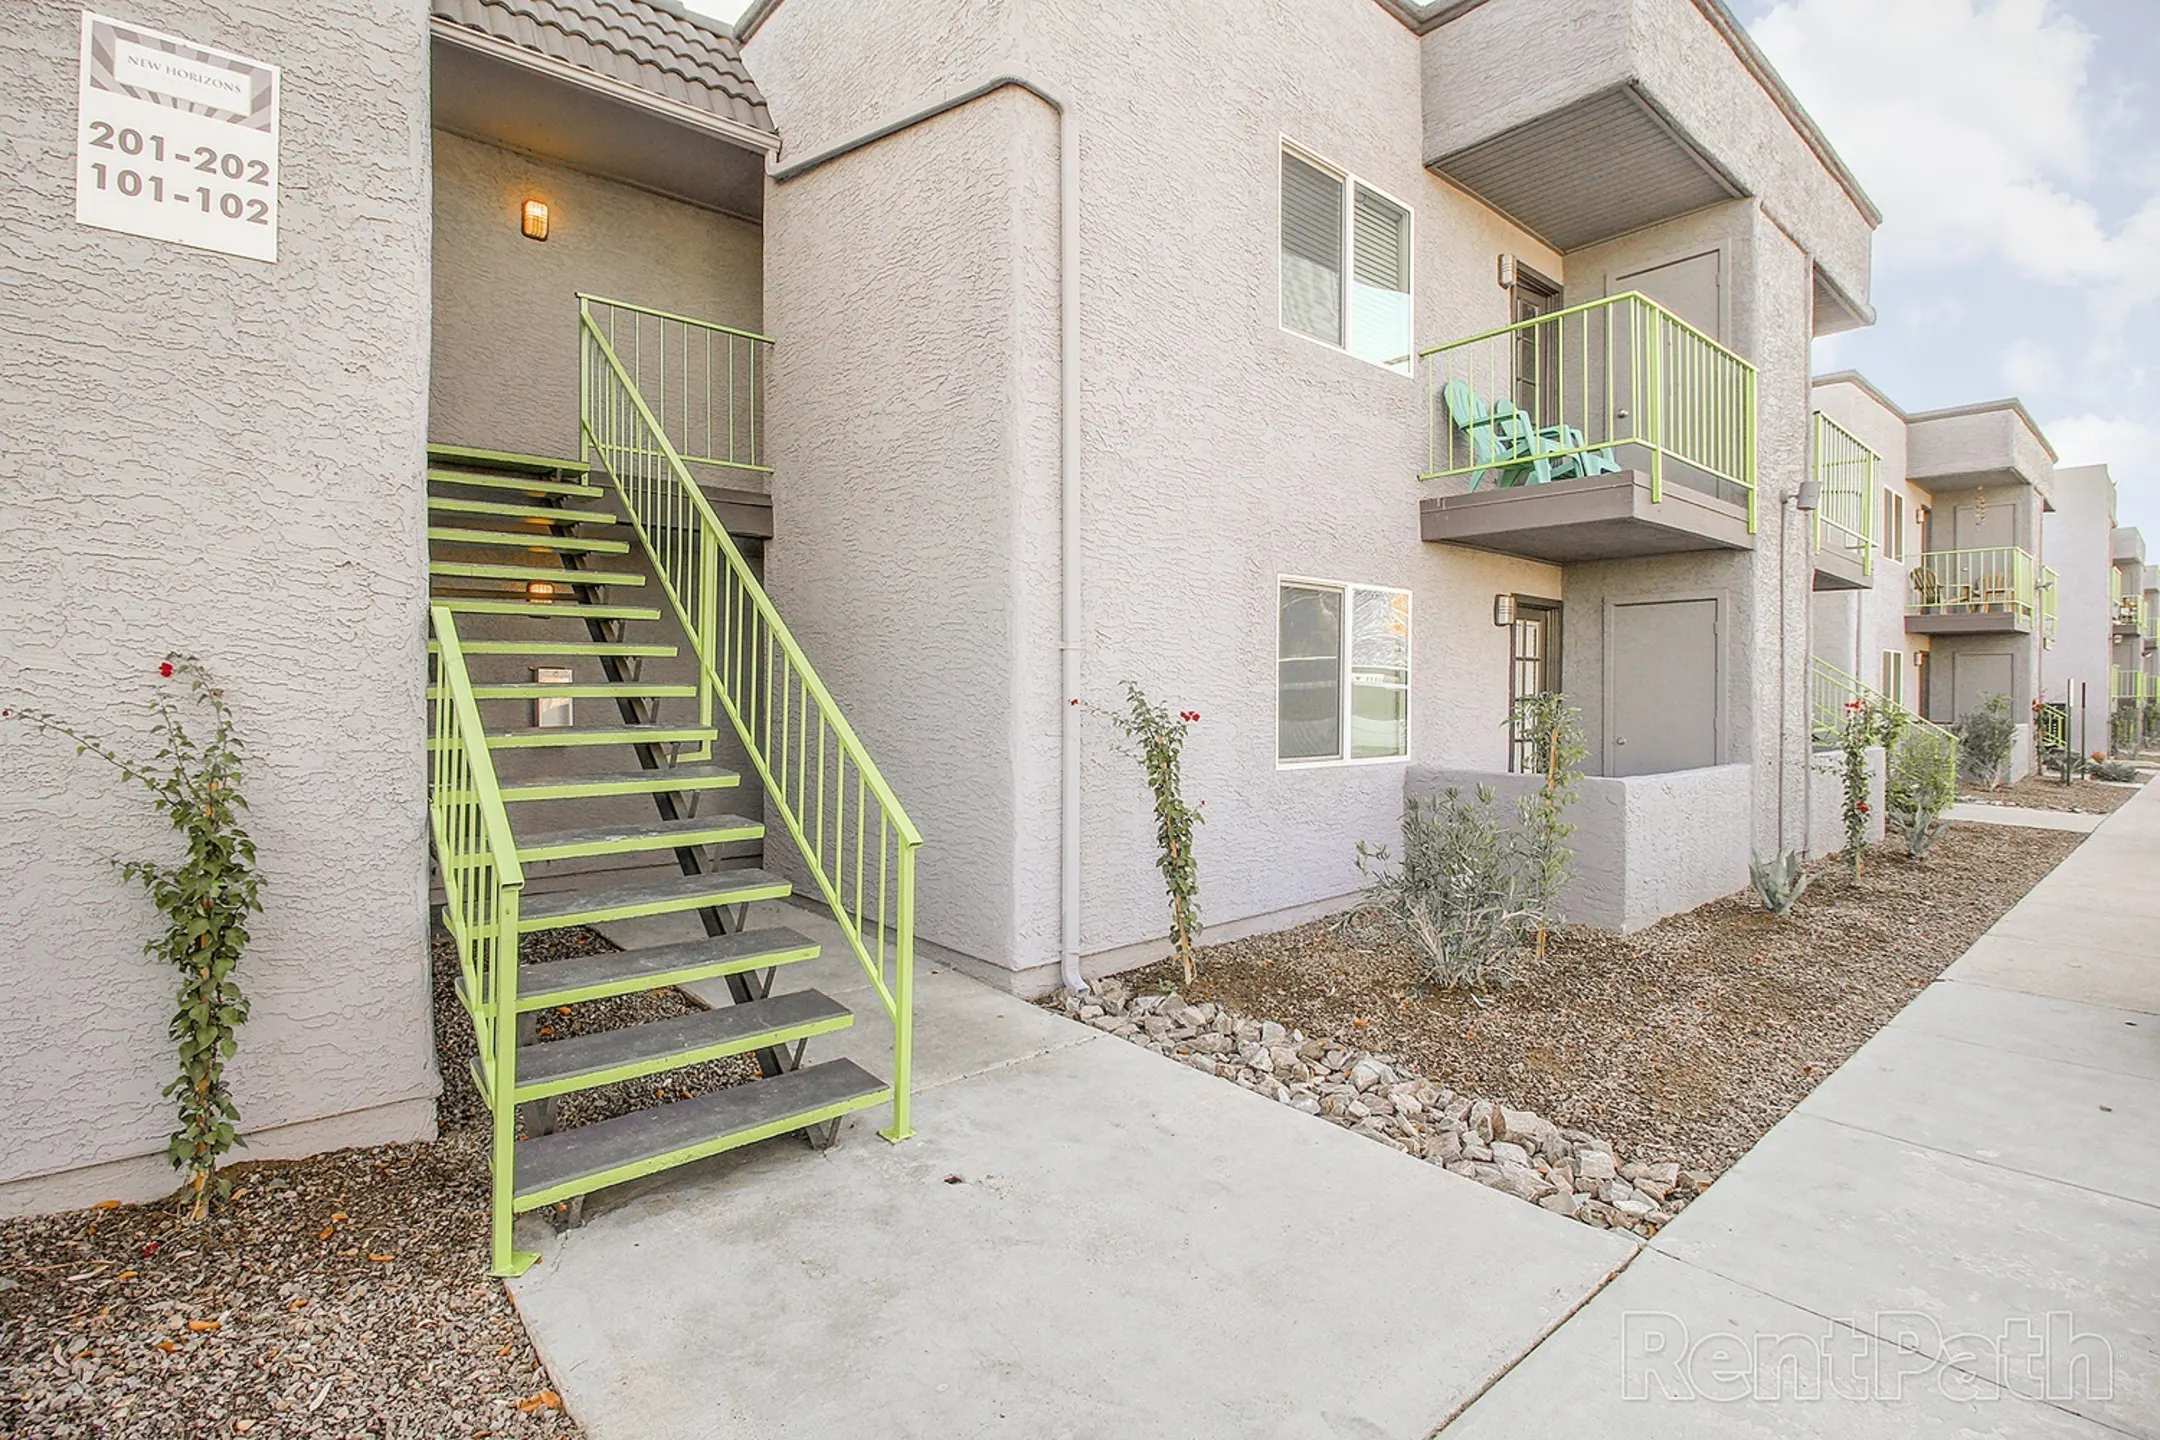 Building - New Horizons Apartments - Phoenix, AZ